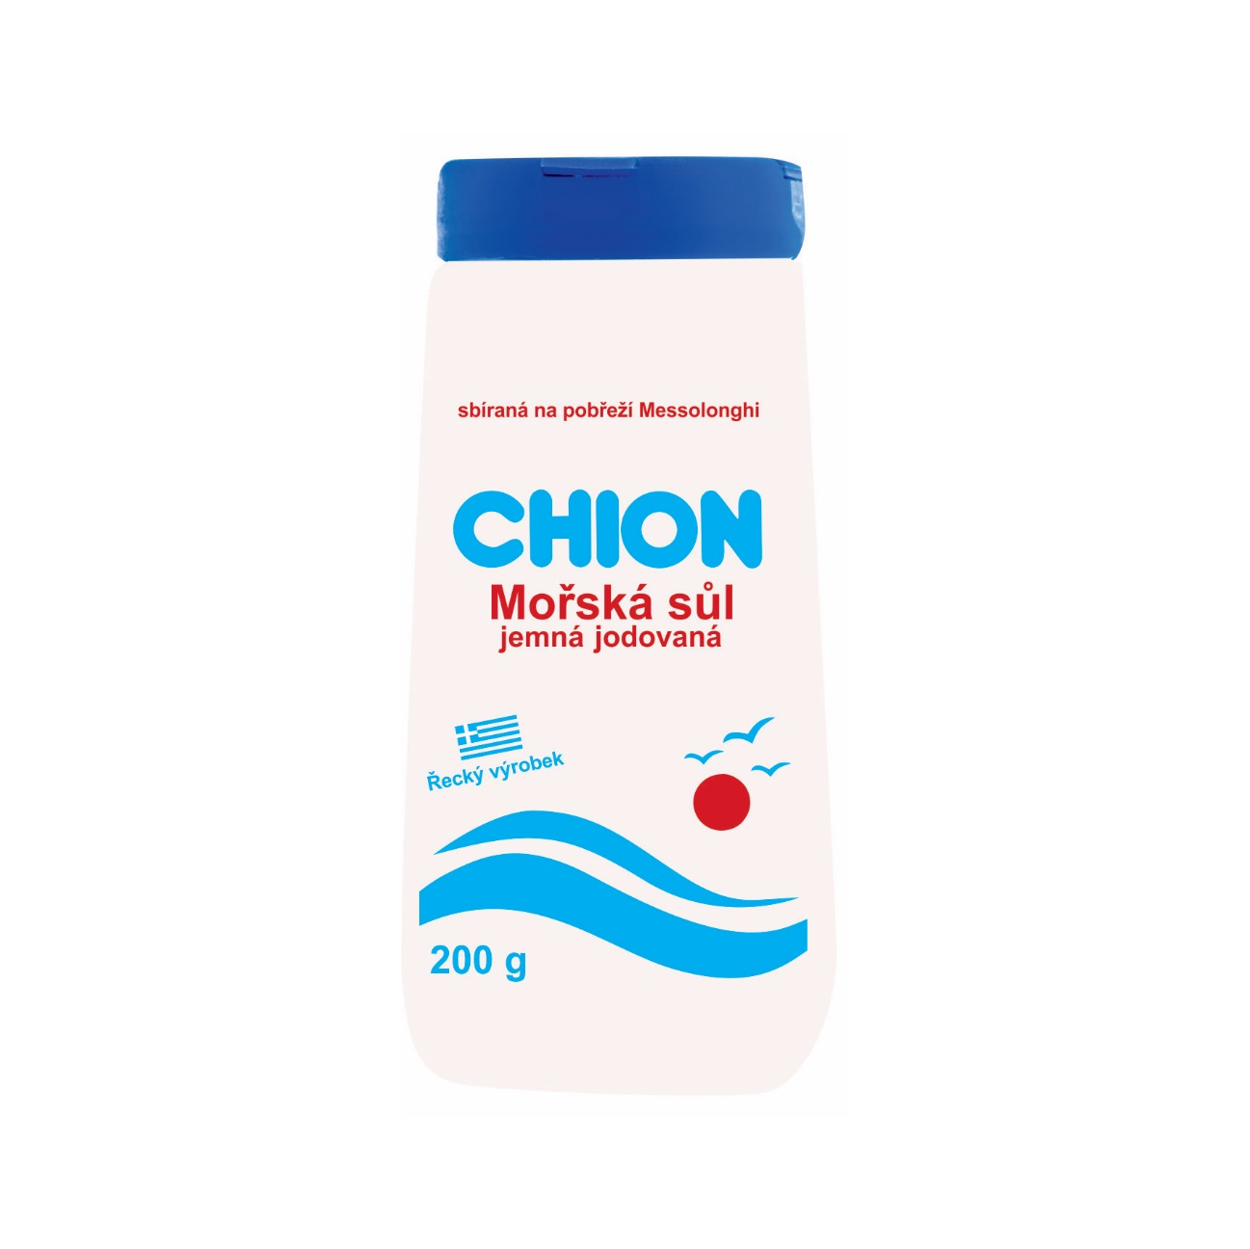 Chion mořská sůl 